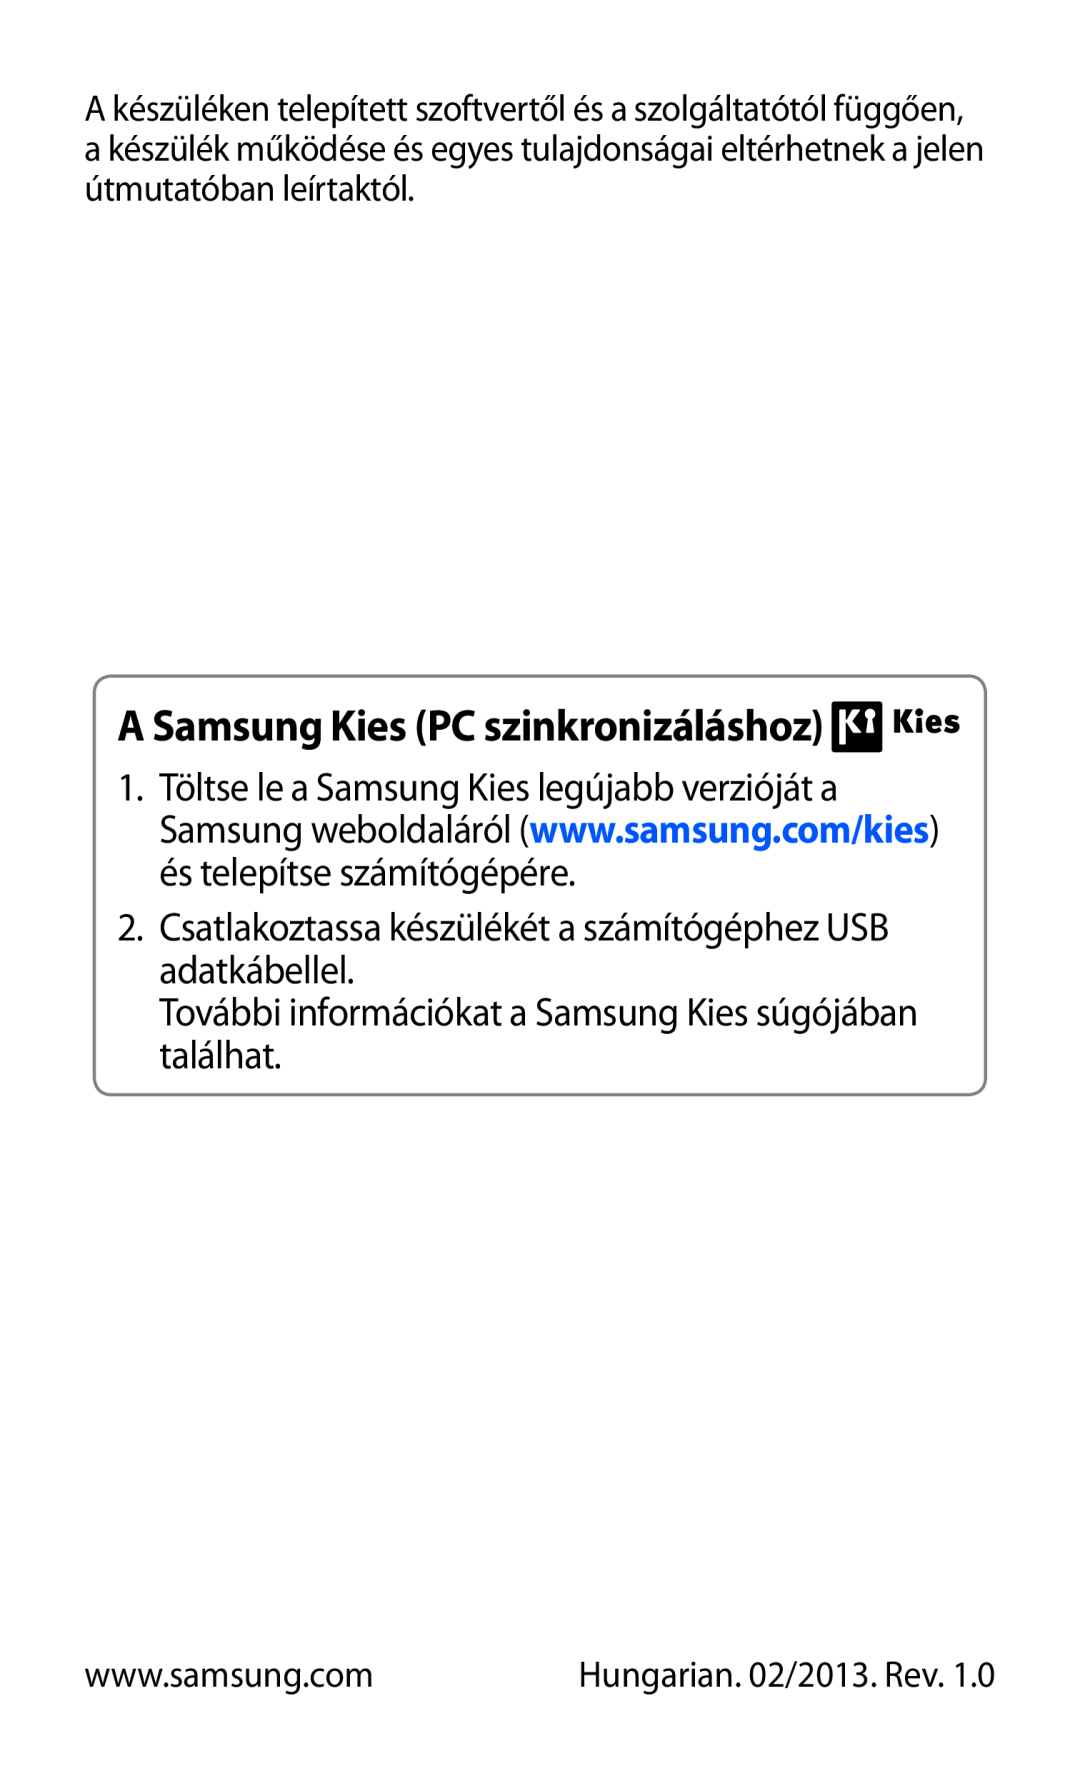 Samsung GT-P3110TSEAUT A Samsung Kies PC szinkronizáláshoz, Csatlakoztassa készülékét a számítógéphez USB adatkábellel 